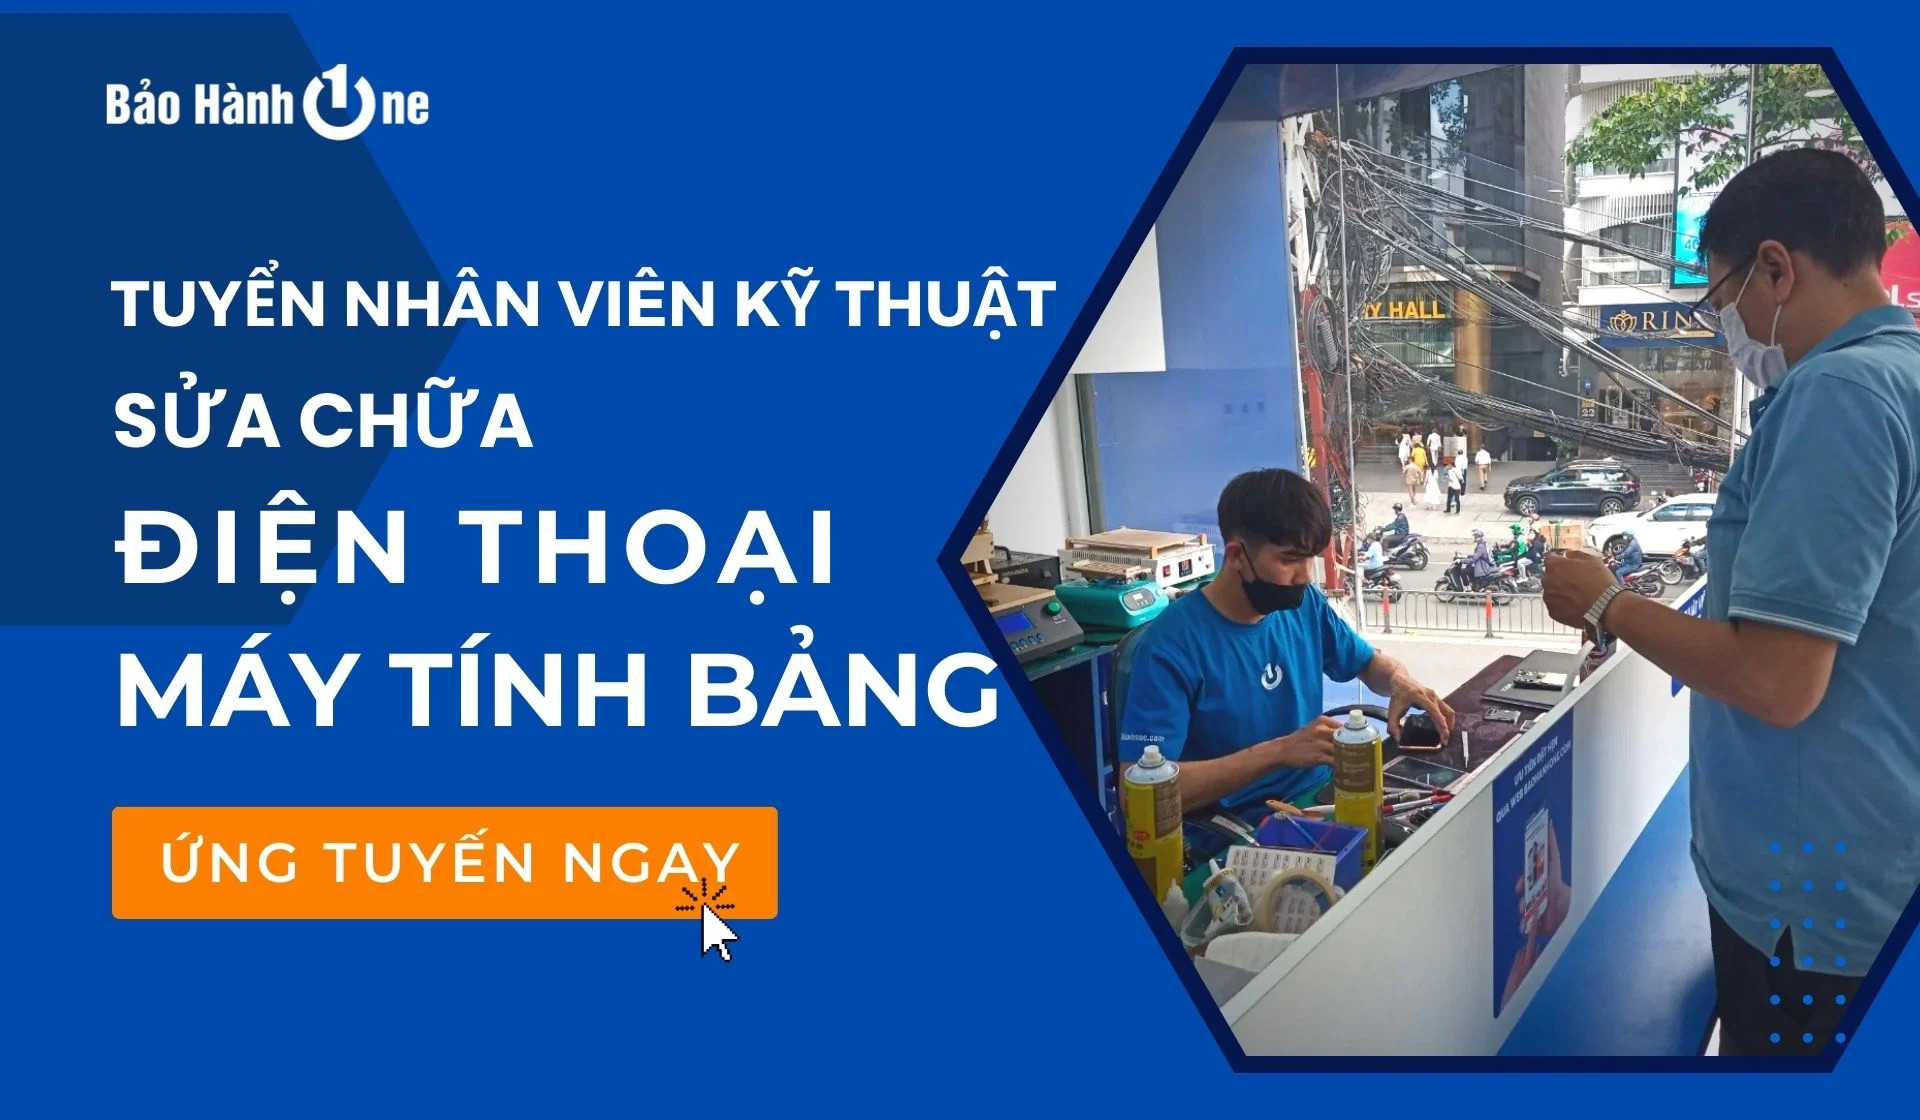 Tuyển dụng Kỹ thuật sửa chữa điện thoại iPhone và Laptop tại Hồ Chí Minh